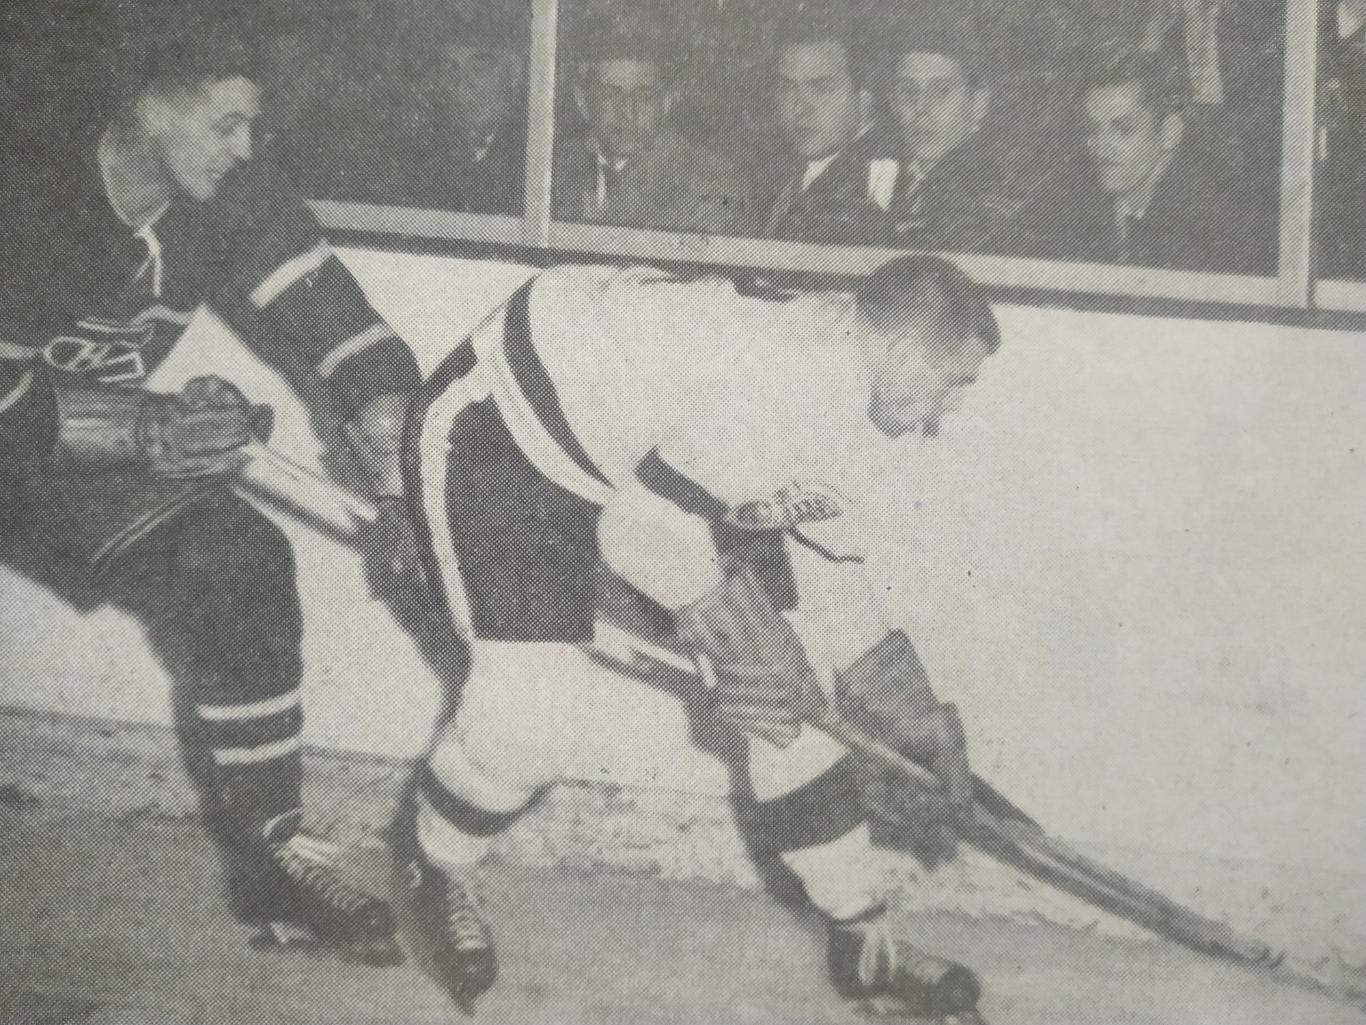 ХОККЕЙ ЖУРНАЛ ЕЖЕМЕСЯЧНИК СПОРТ РЕВЬЮ НХЛ NHL 1956 FEBRIER SPORT REVUE 5